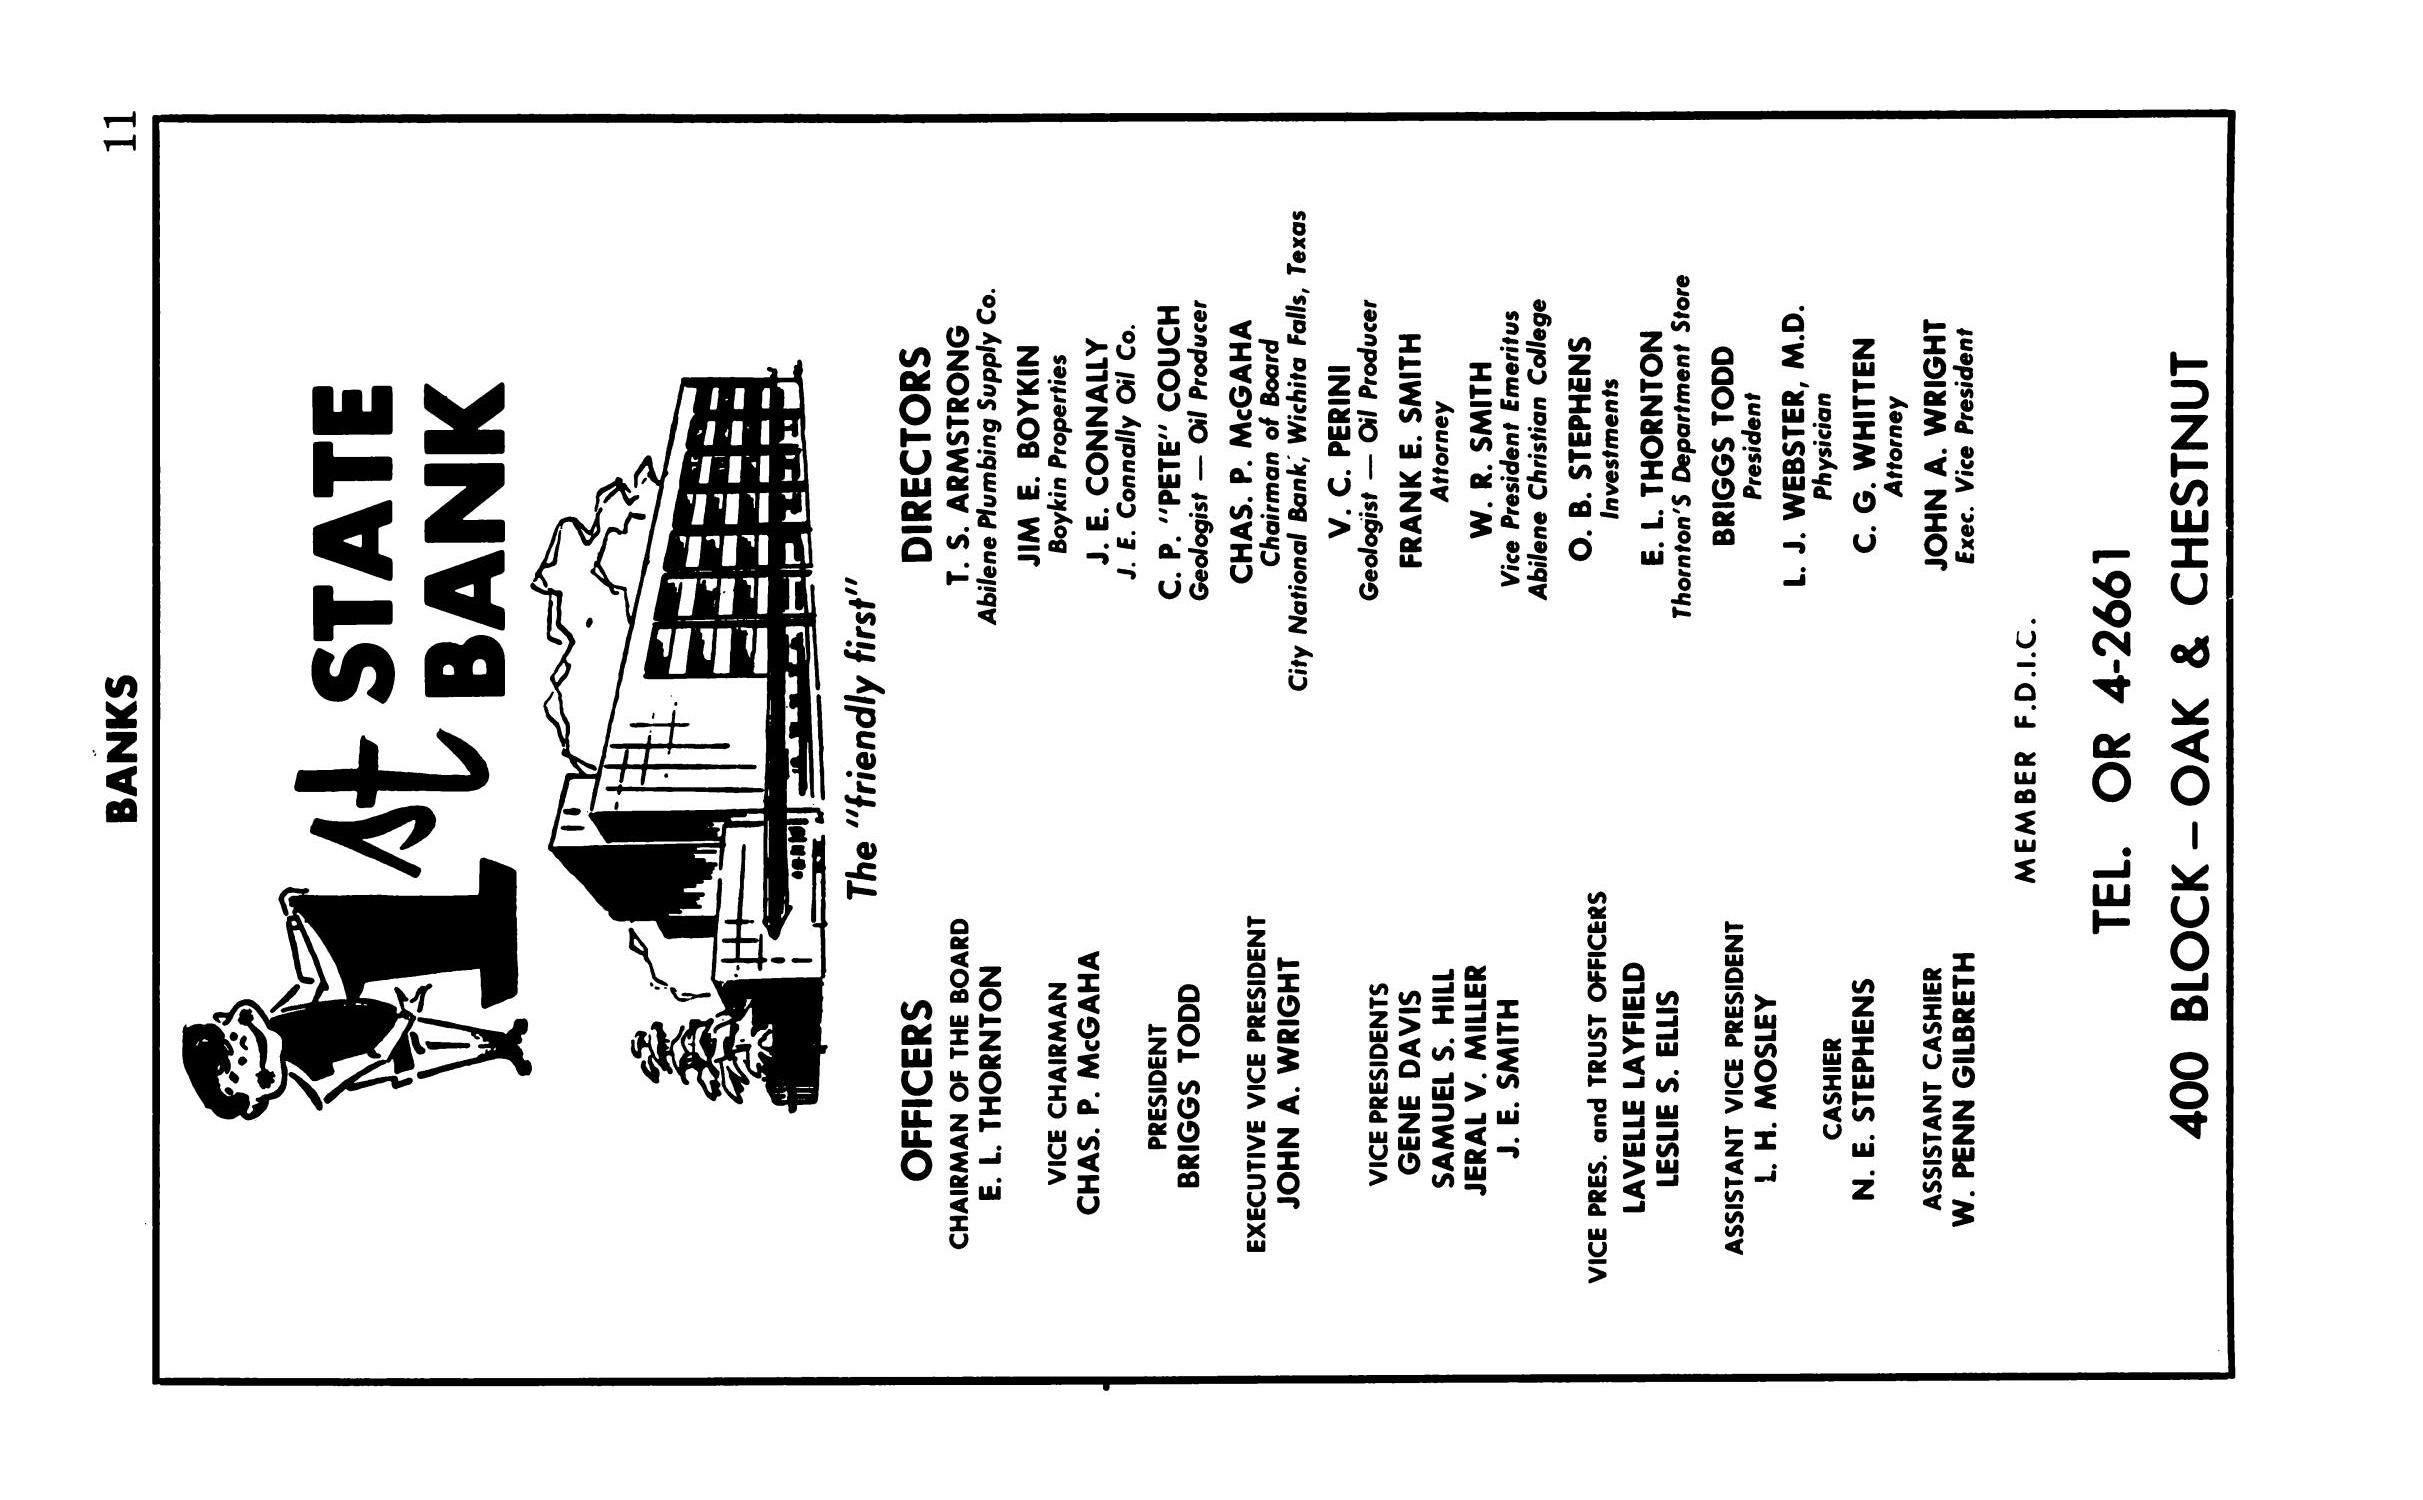 Polk's Abilene (Taylor County, Texas) City Directory, 1963
                                                
                                                    11
                                                